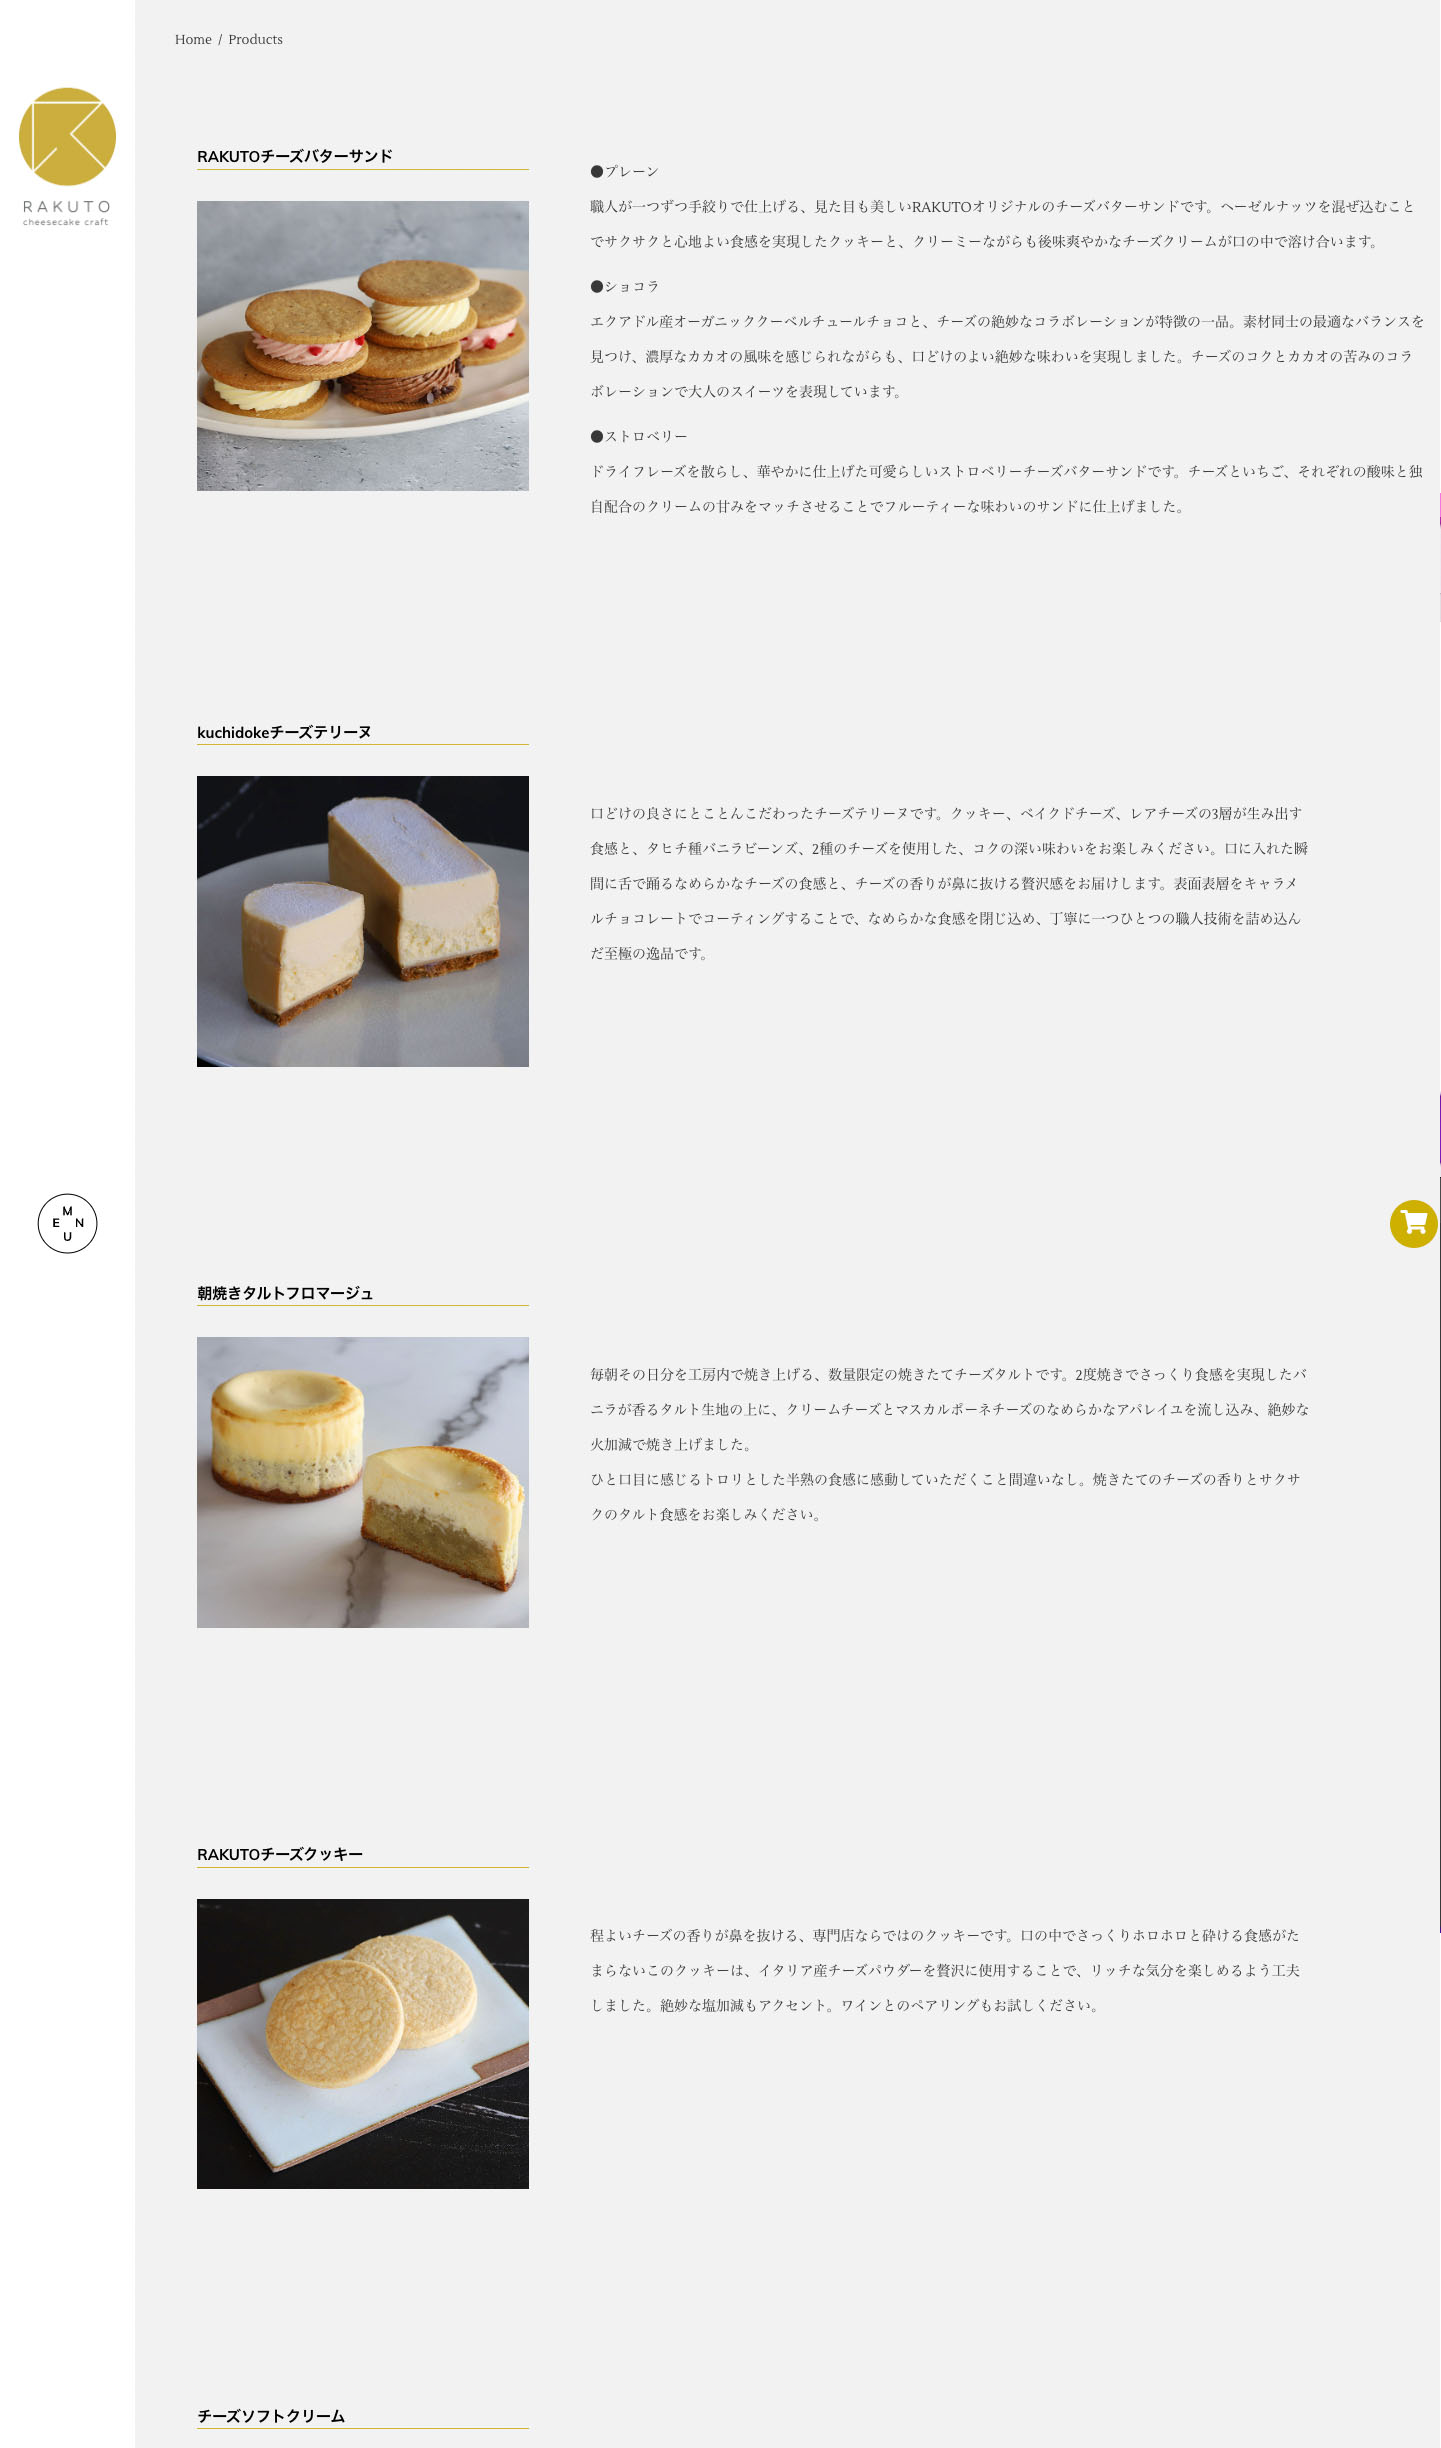 RAKUTO cheesecake craft「WEB」